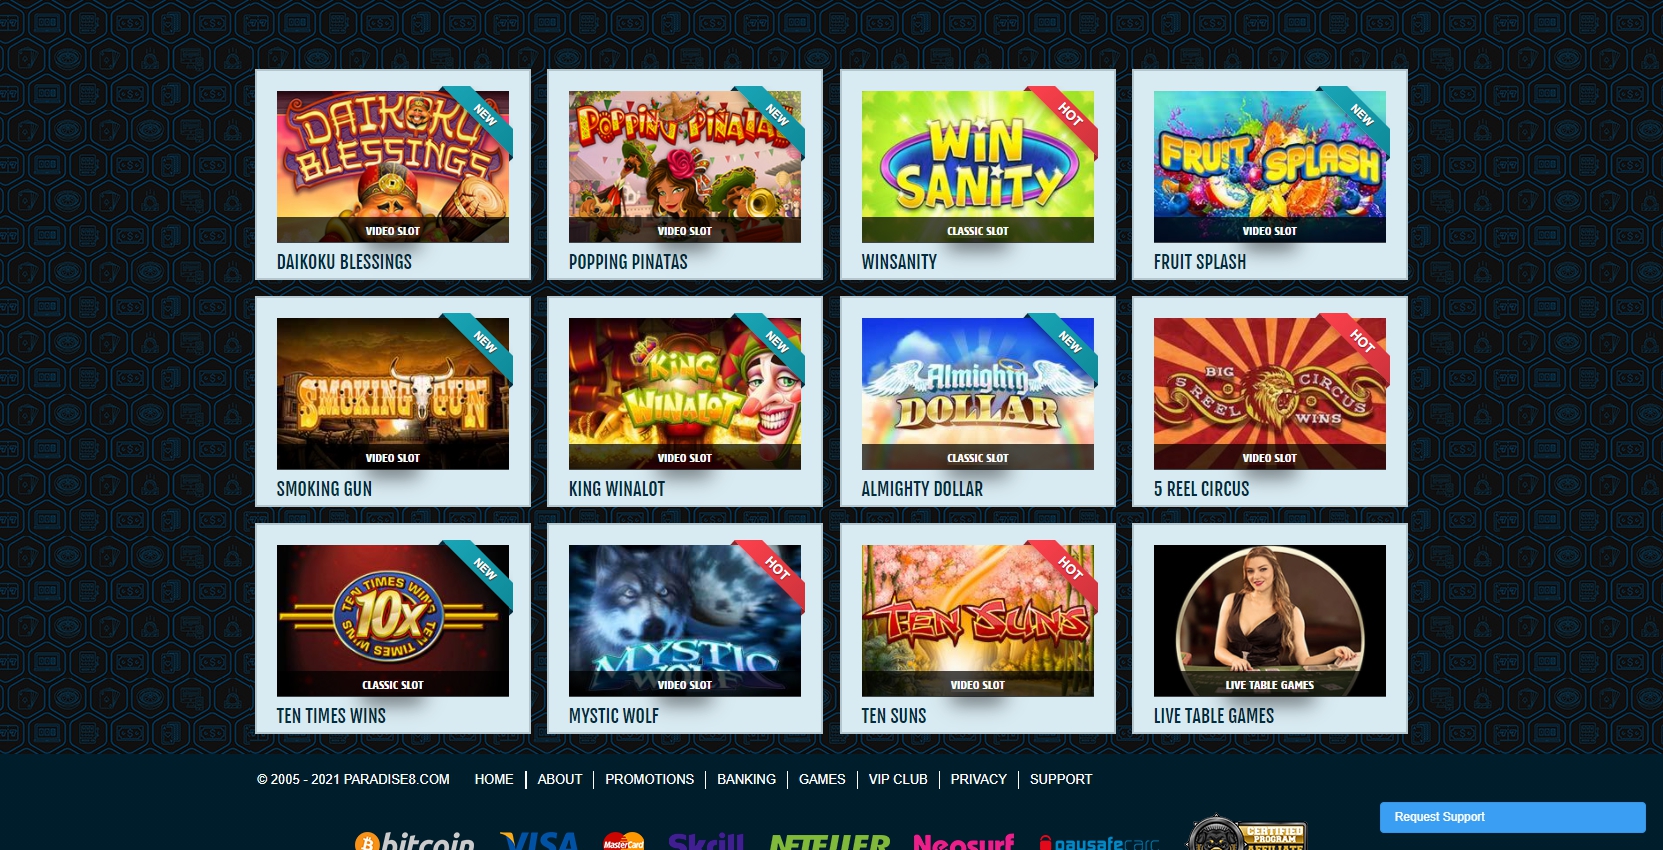 Paradise 8 Casino Games